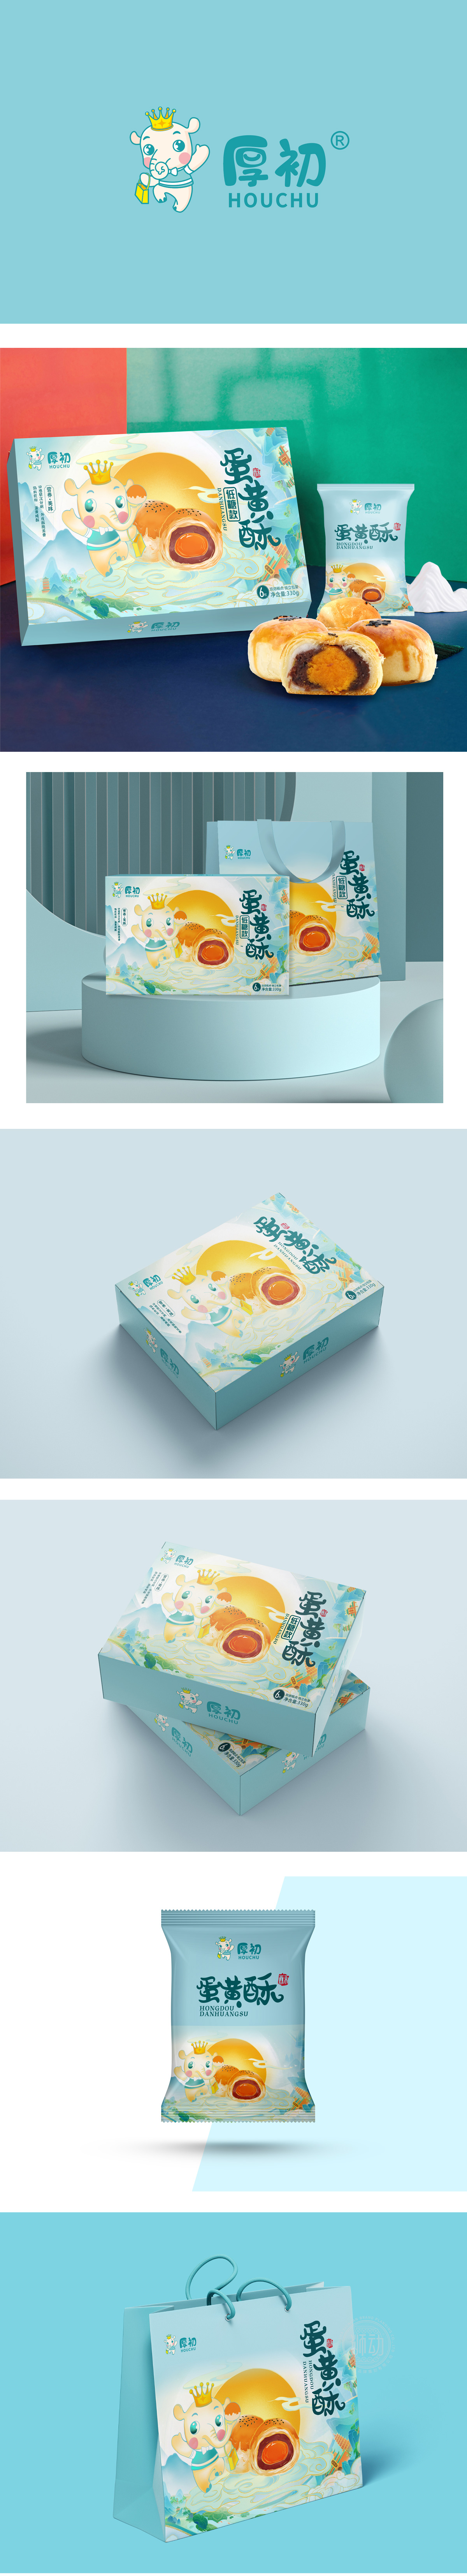 厚初蛋黄酥月饼礼盒节日包装策划设计